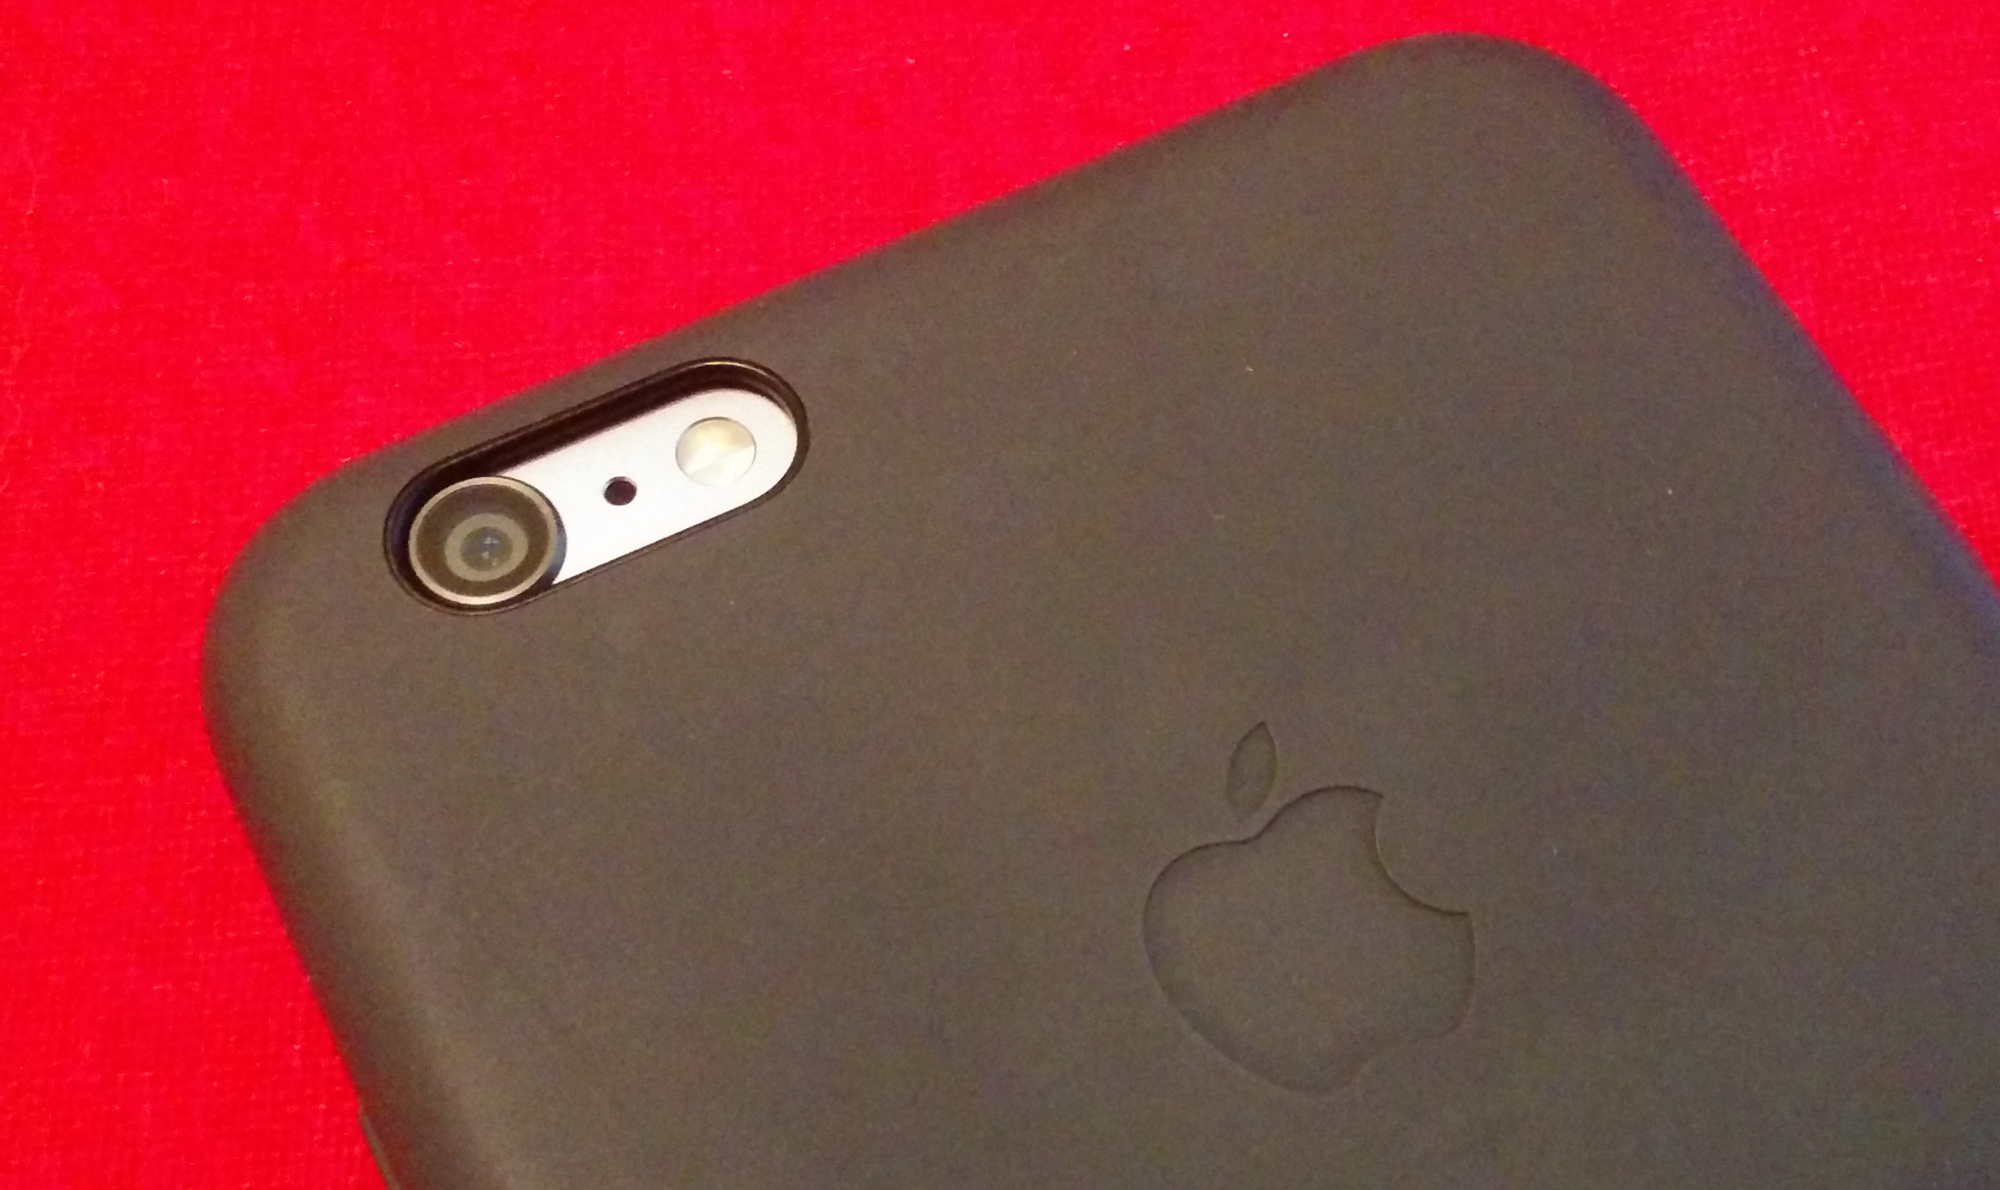 iPhone 6 Plus silicone case